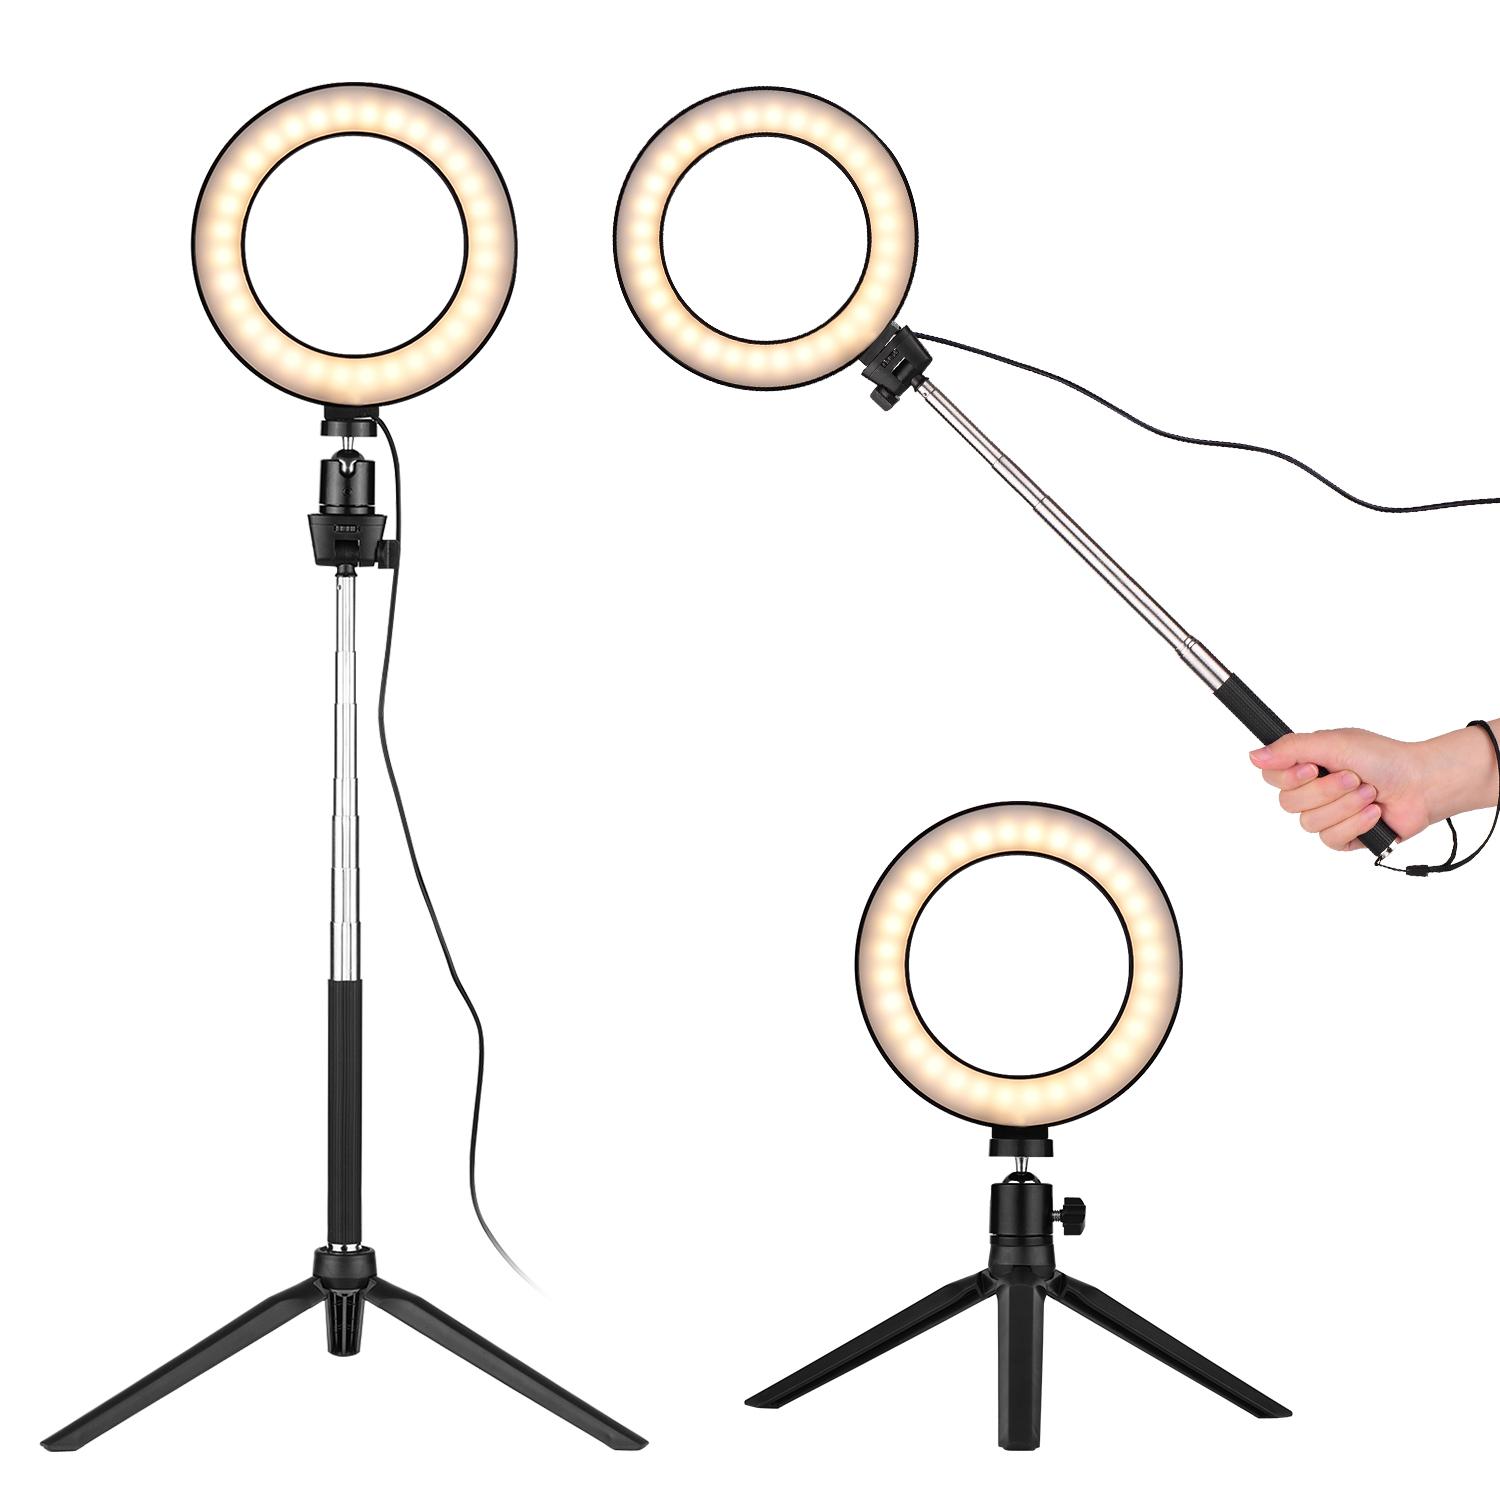 Đèn vòng LED chụp ảnh  nhỏ 6 inch có thể điều chỉnh độ sáng 3 chế độ - Hồng